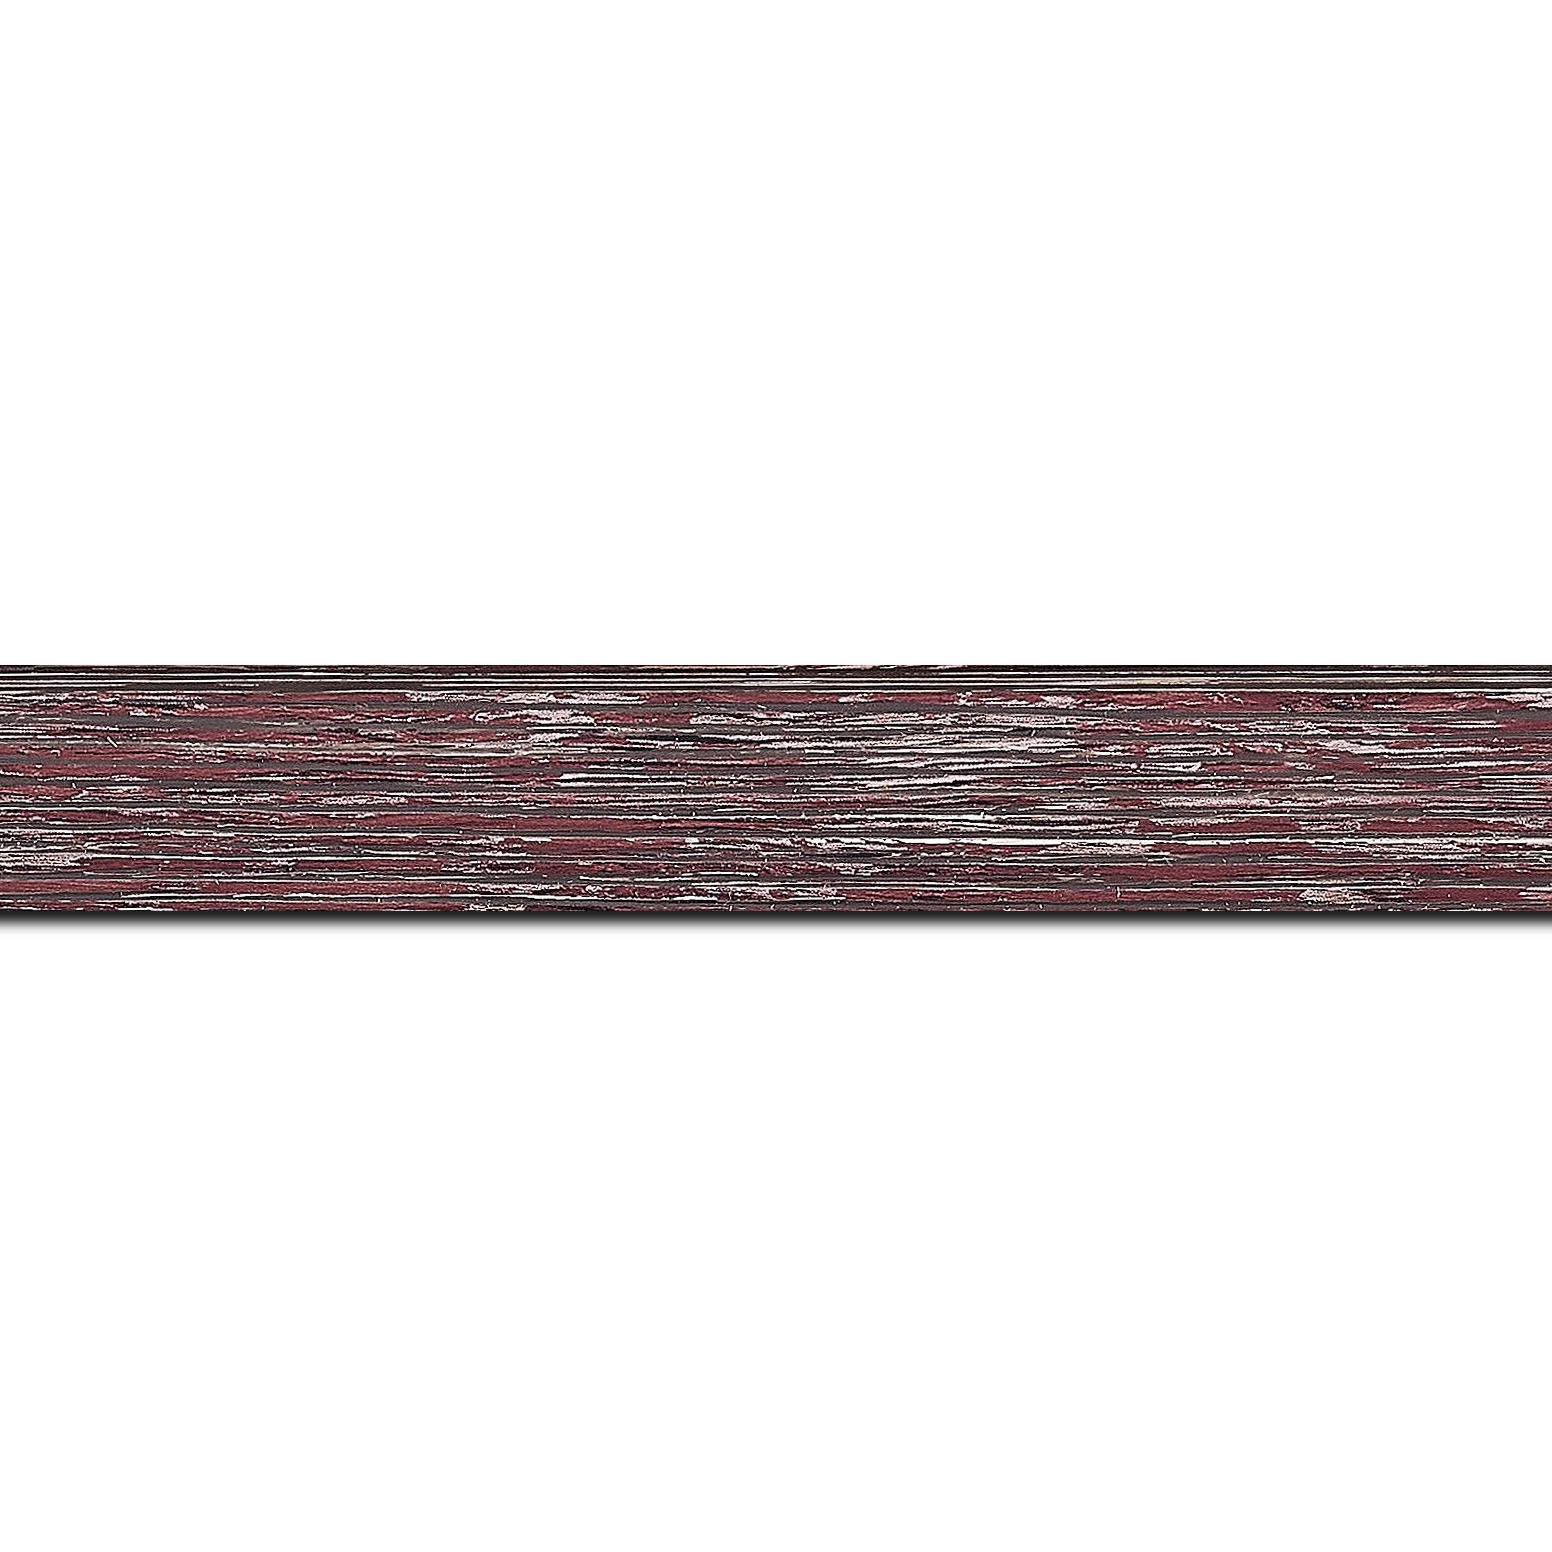 Baguette longueur 1.40m bois profil arrondi en pente plongeant largeur 2.4cm couleur framboise finition veinée, reflet argenté